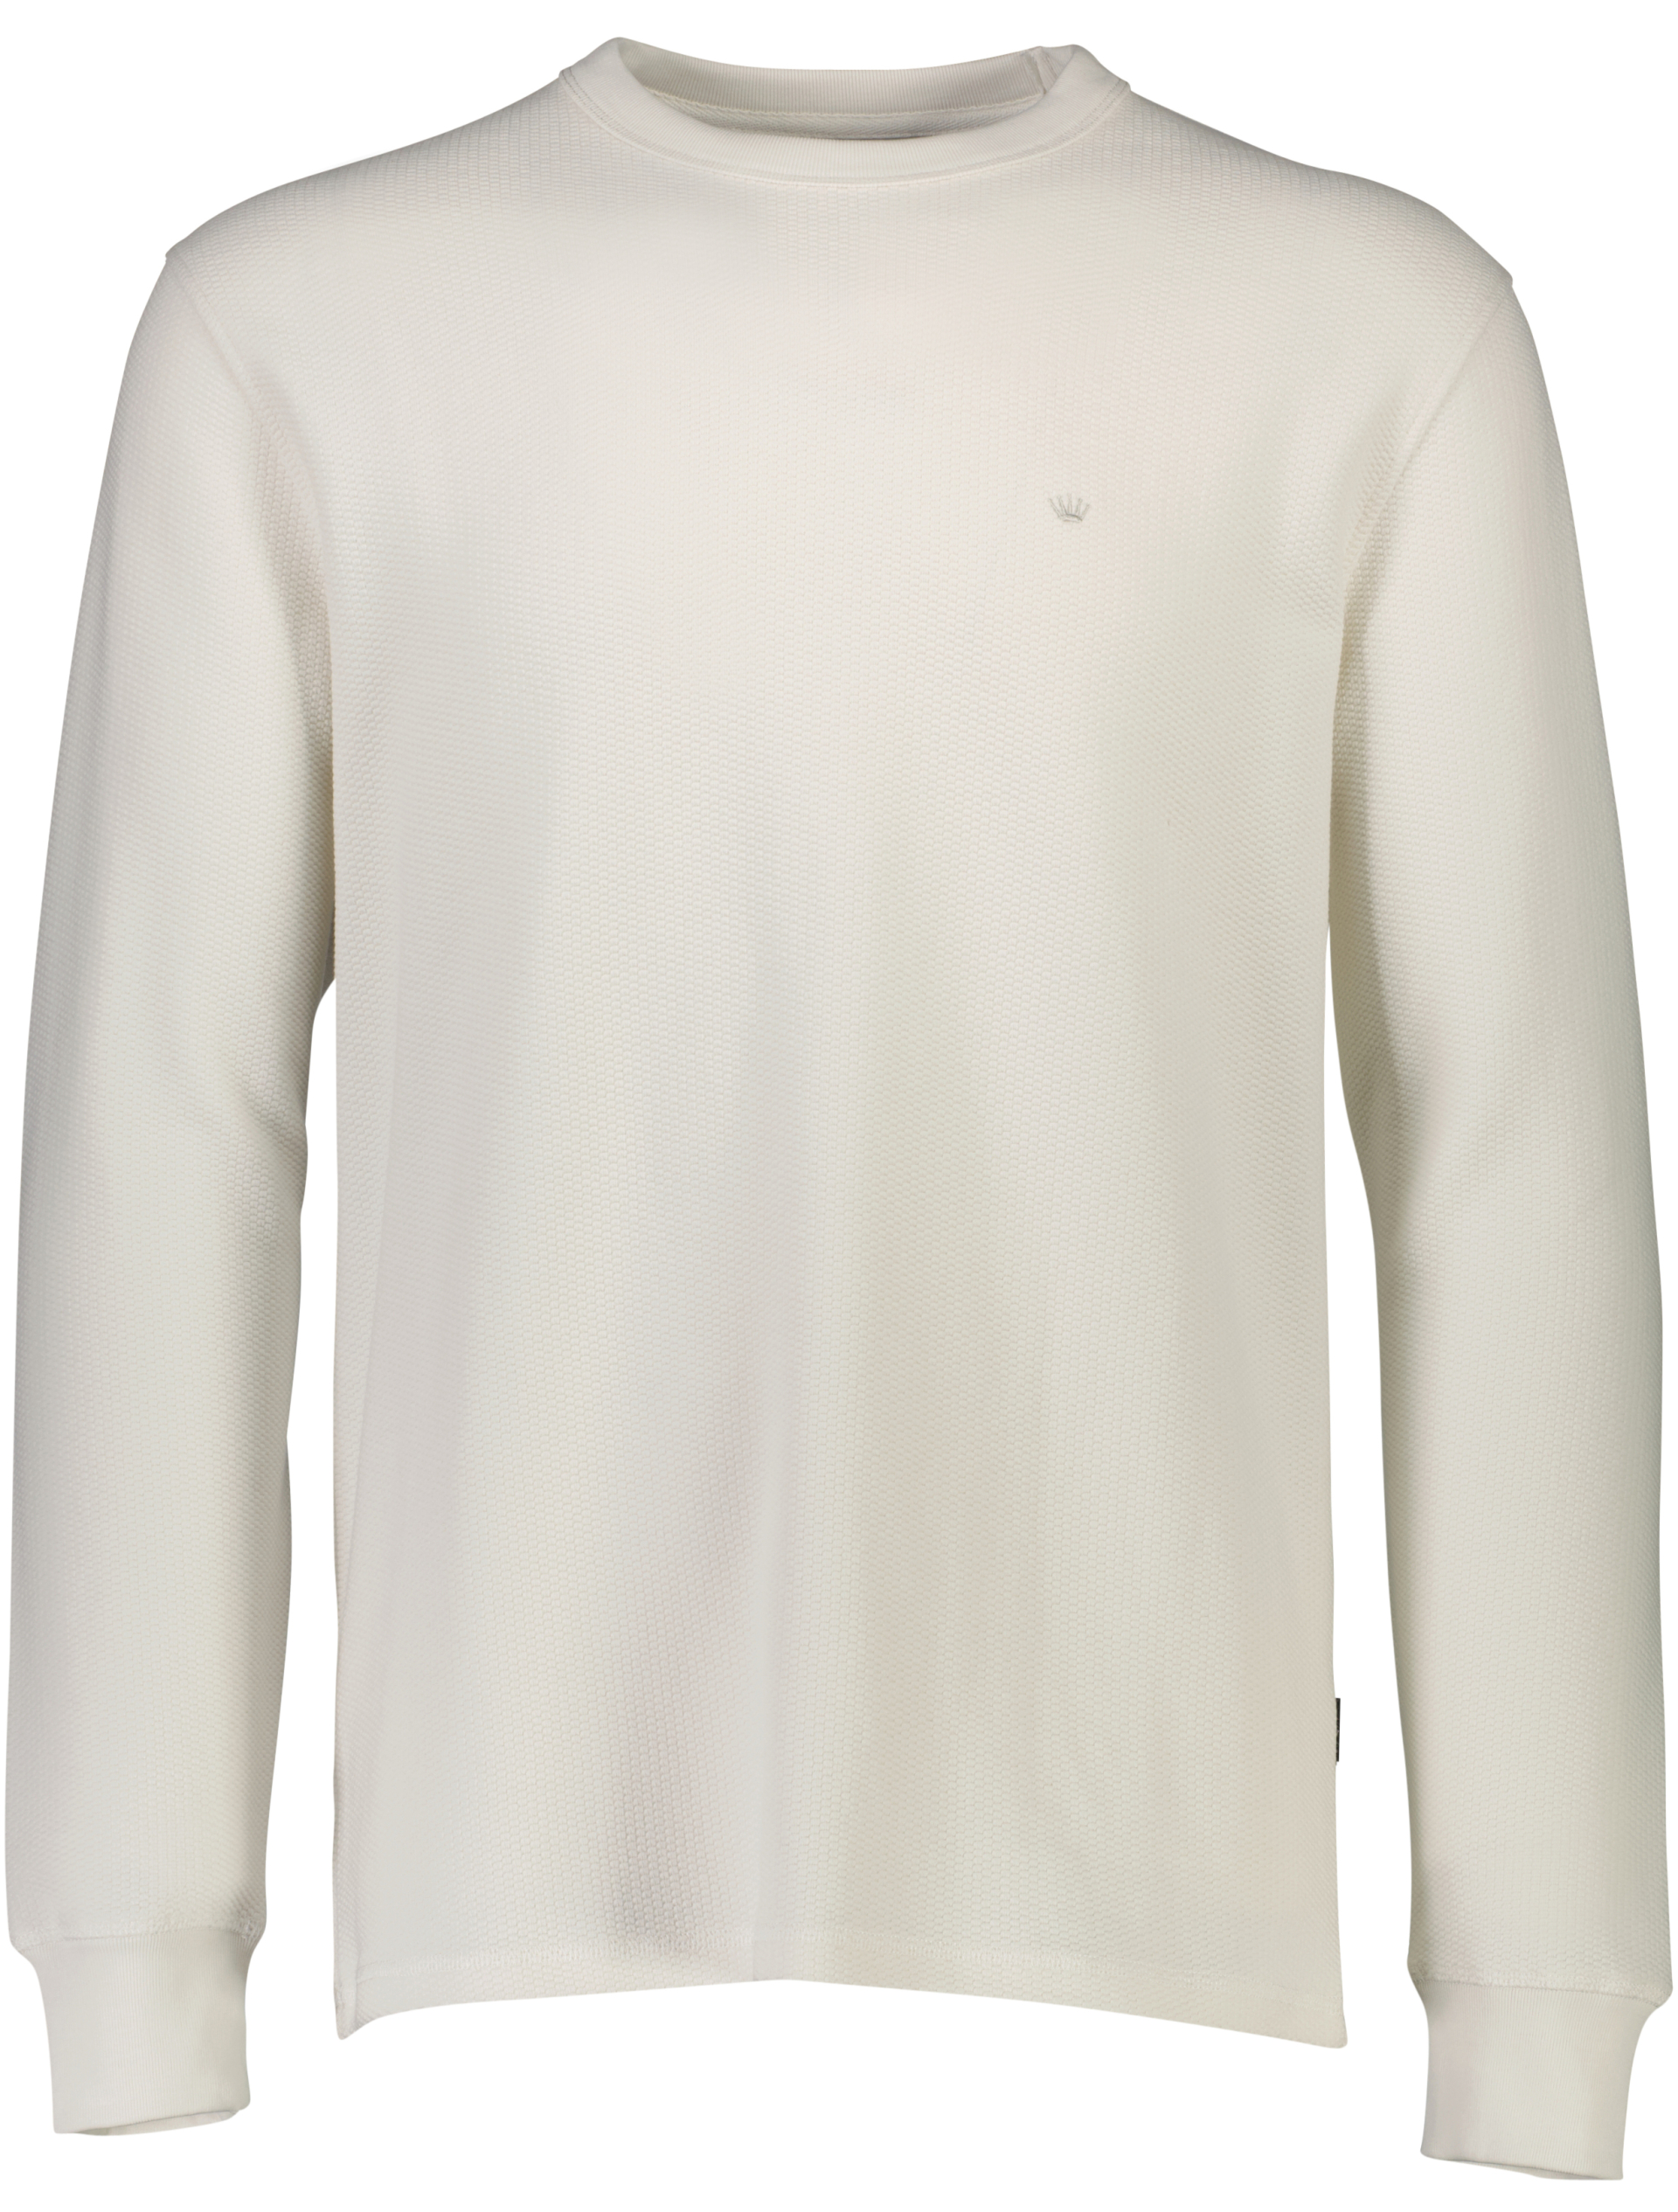 Junk de Luxe Sweatshirt hvid / off white